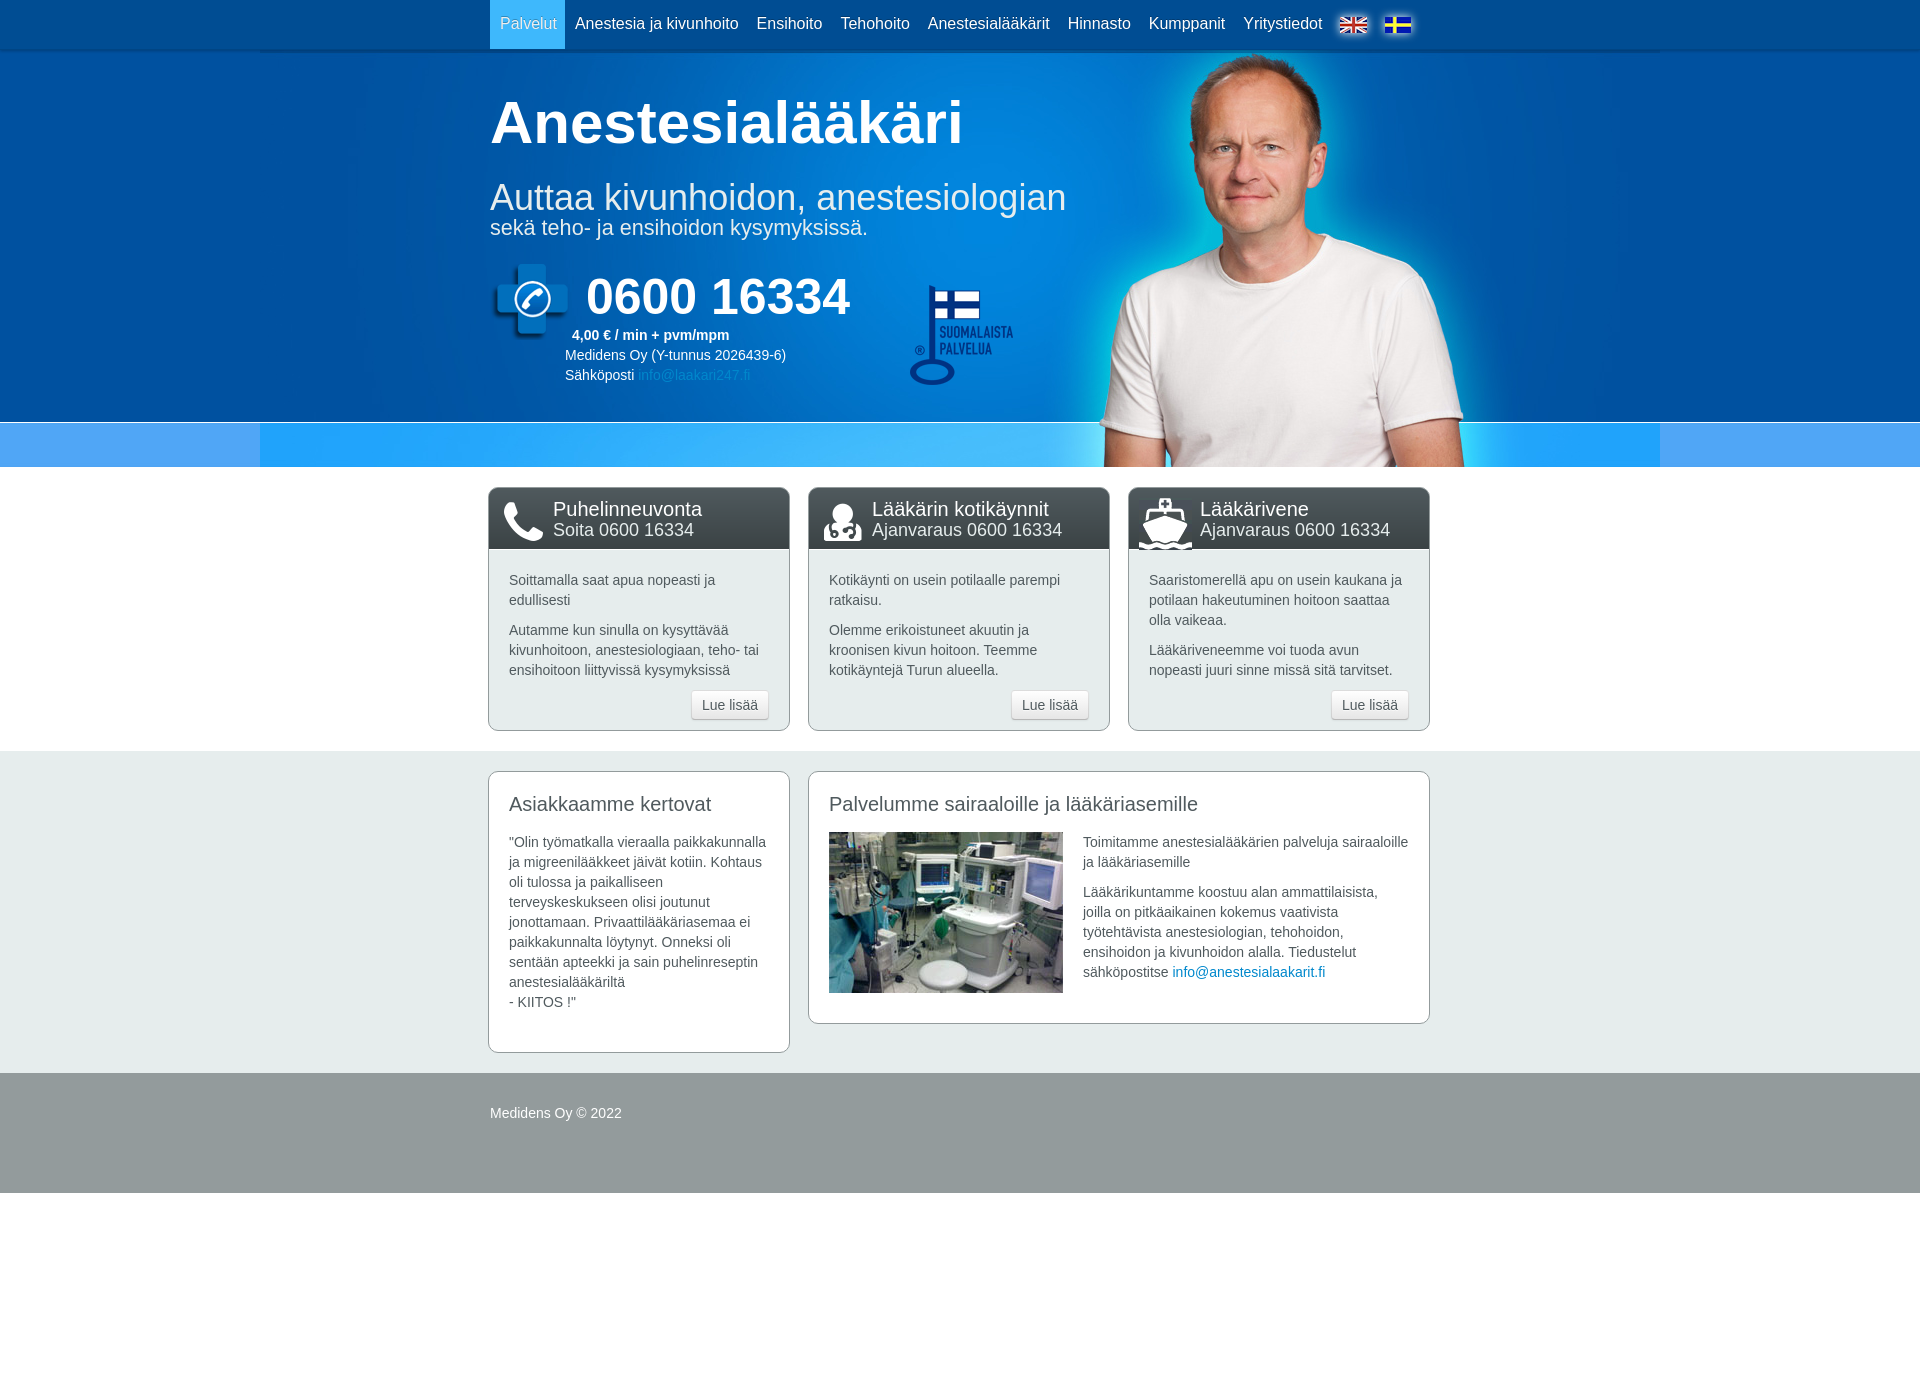 Näyttökuva anestesialaakarit.fi